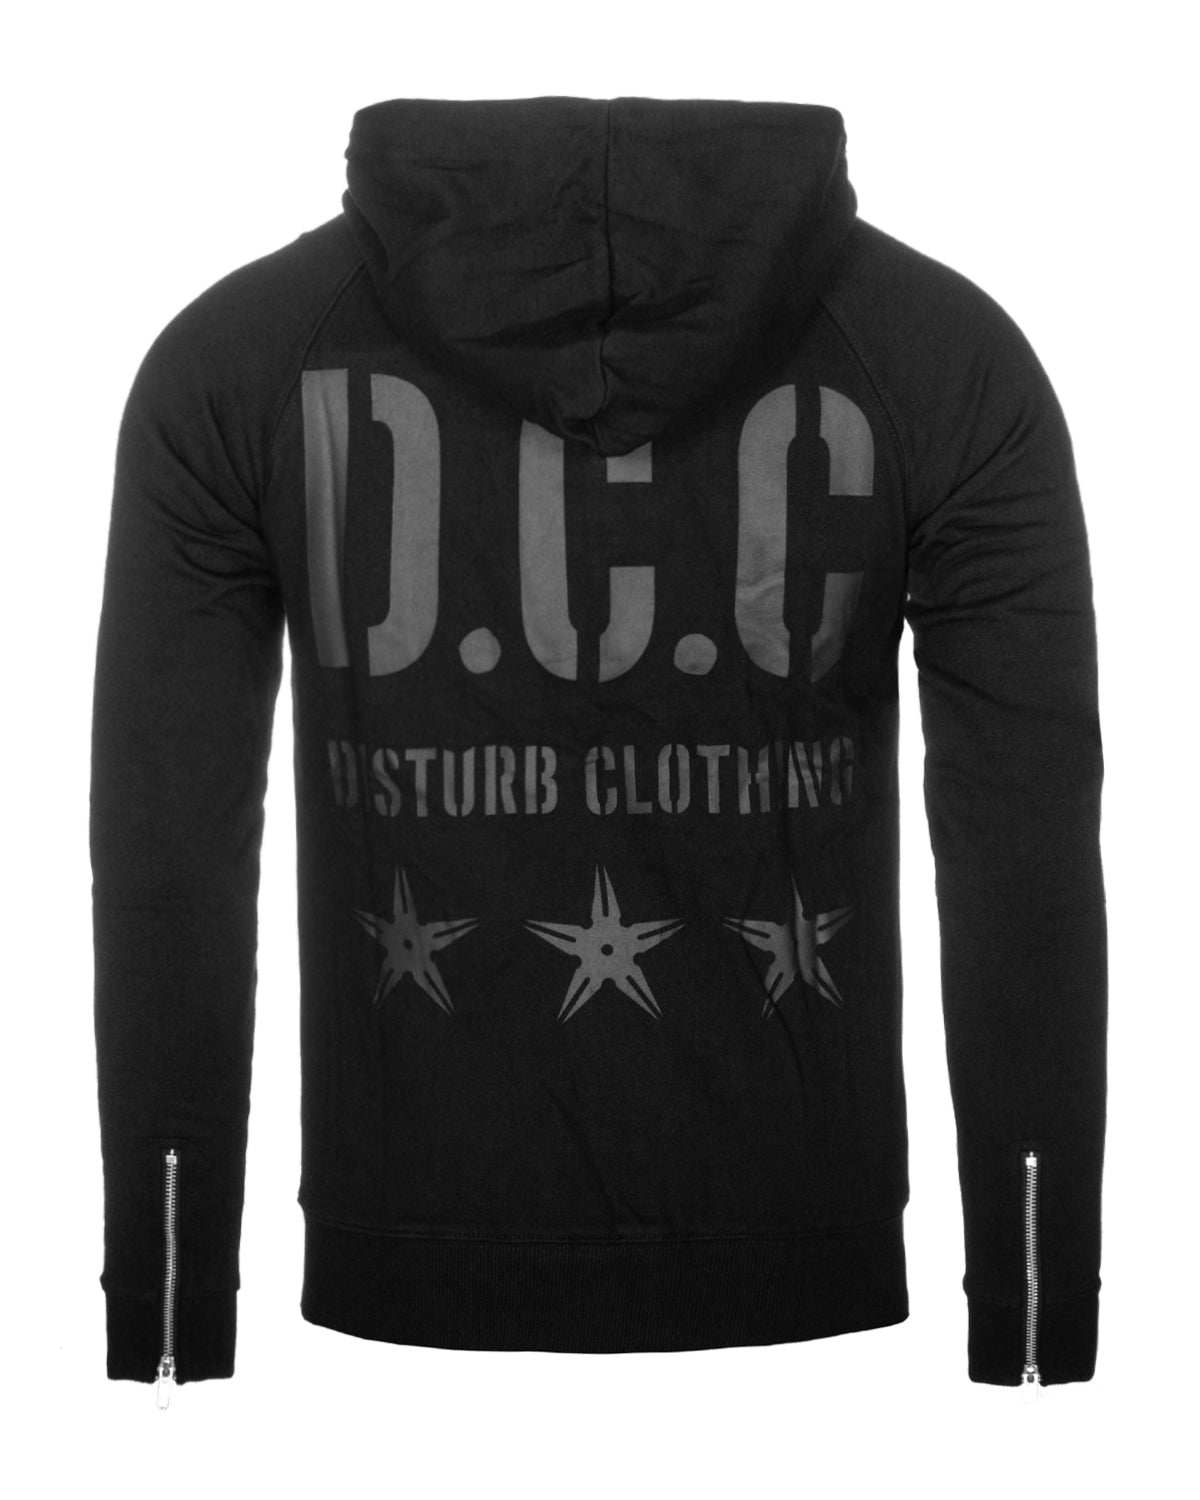 Disturb Clothing DCC vetoketjuhuppari - Musta